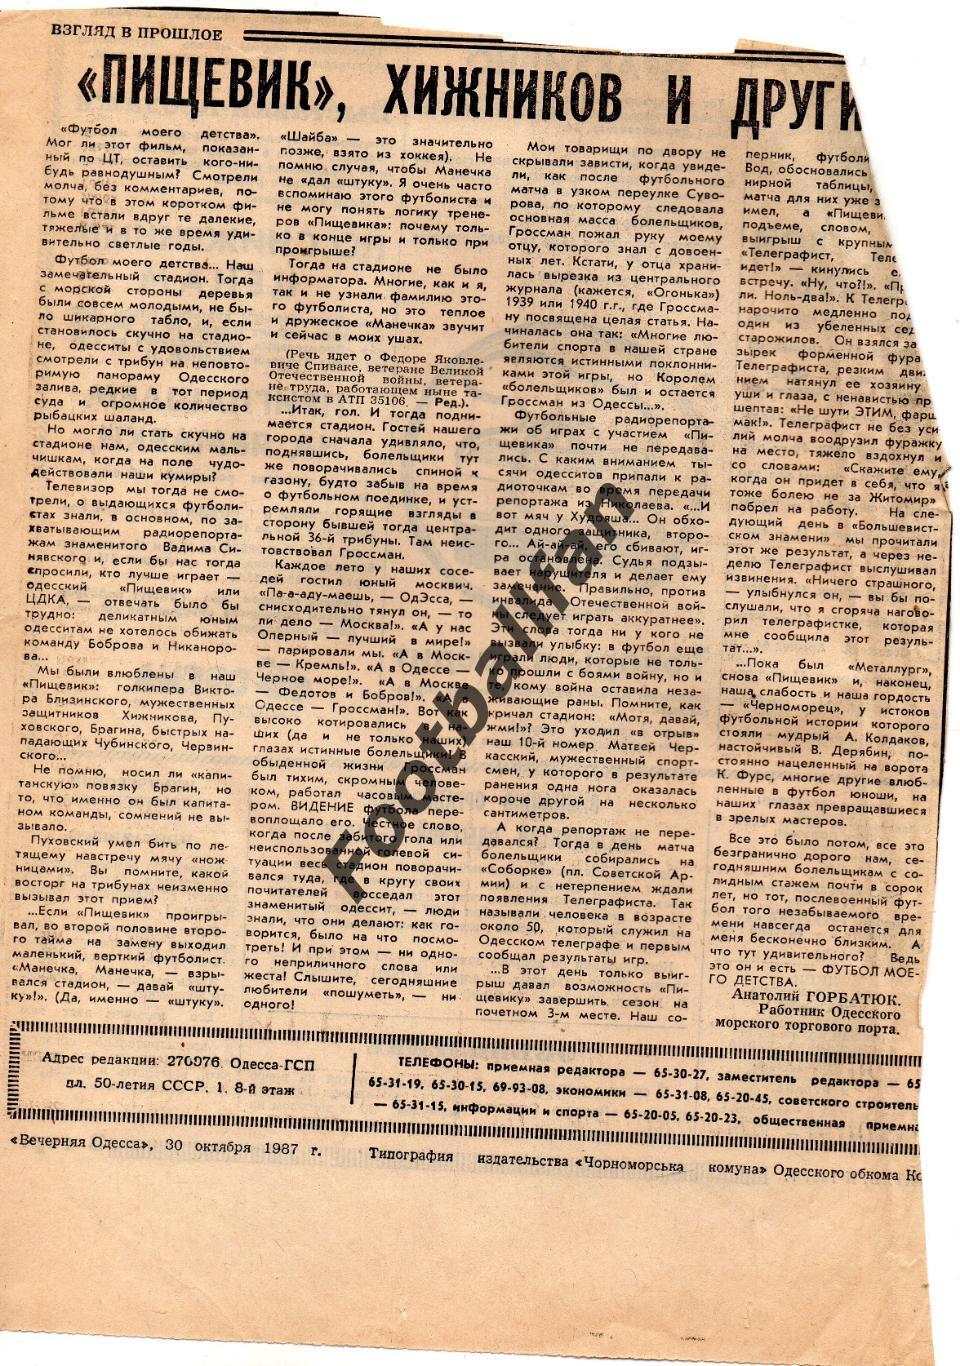 Пищевик, Хижников и другие .Вечерняя Одессаот 30.10.1987